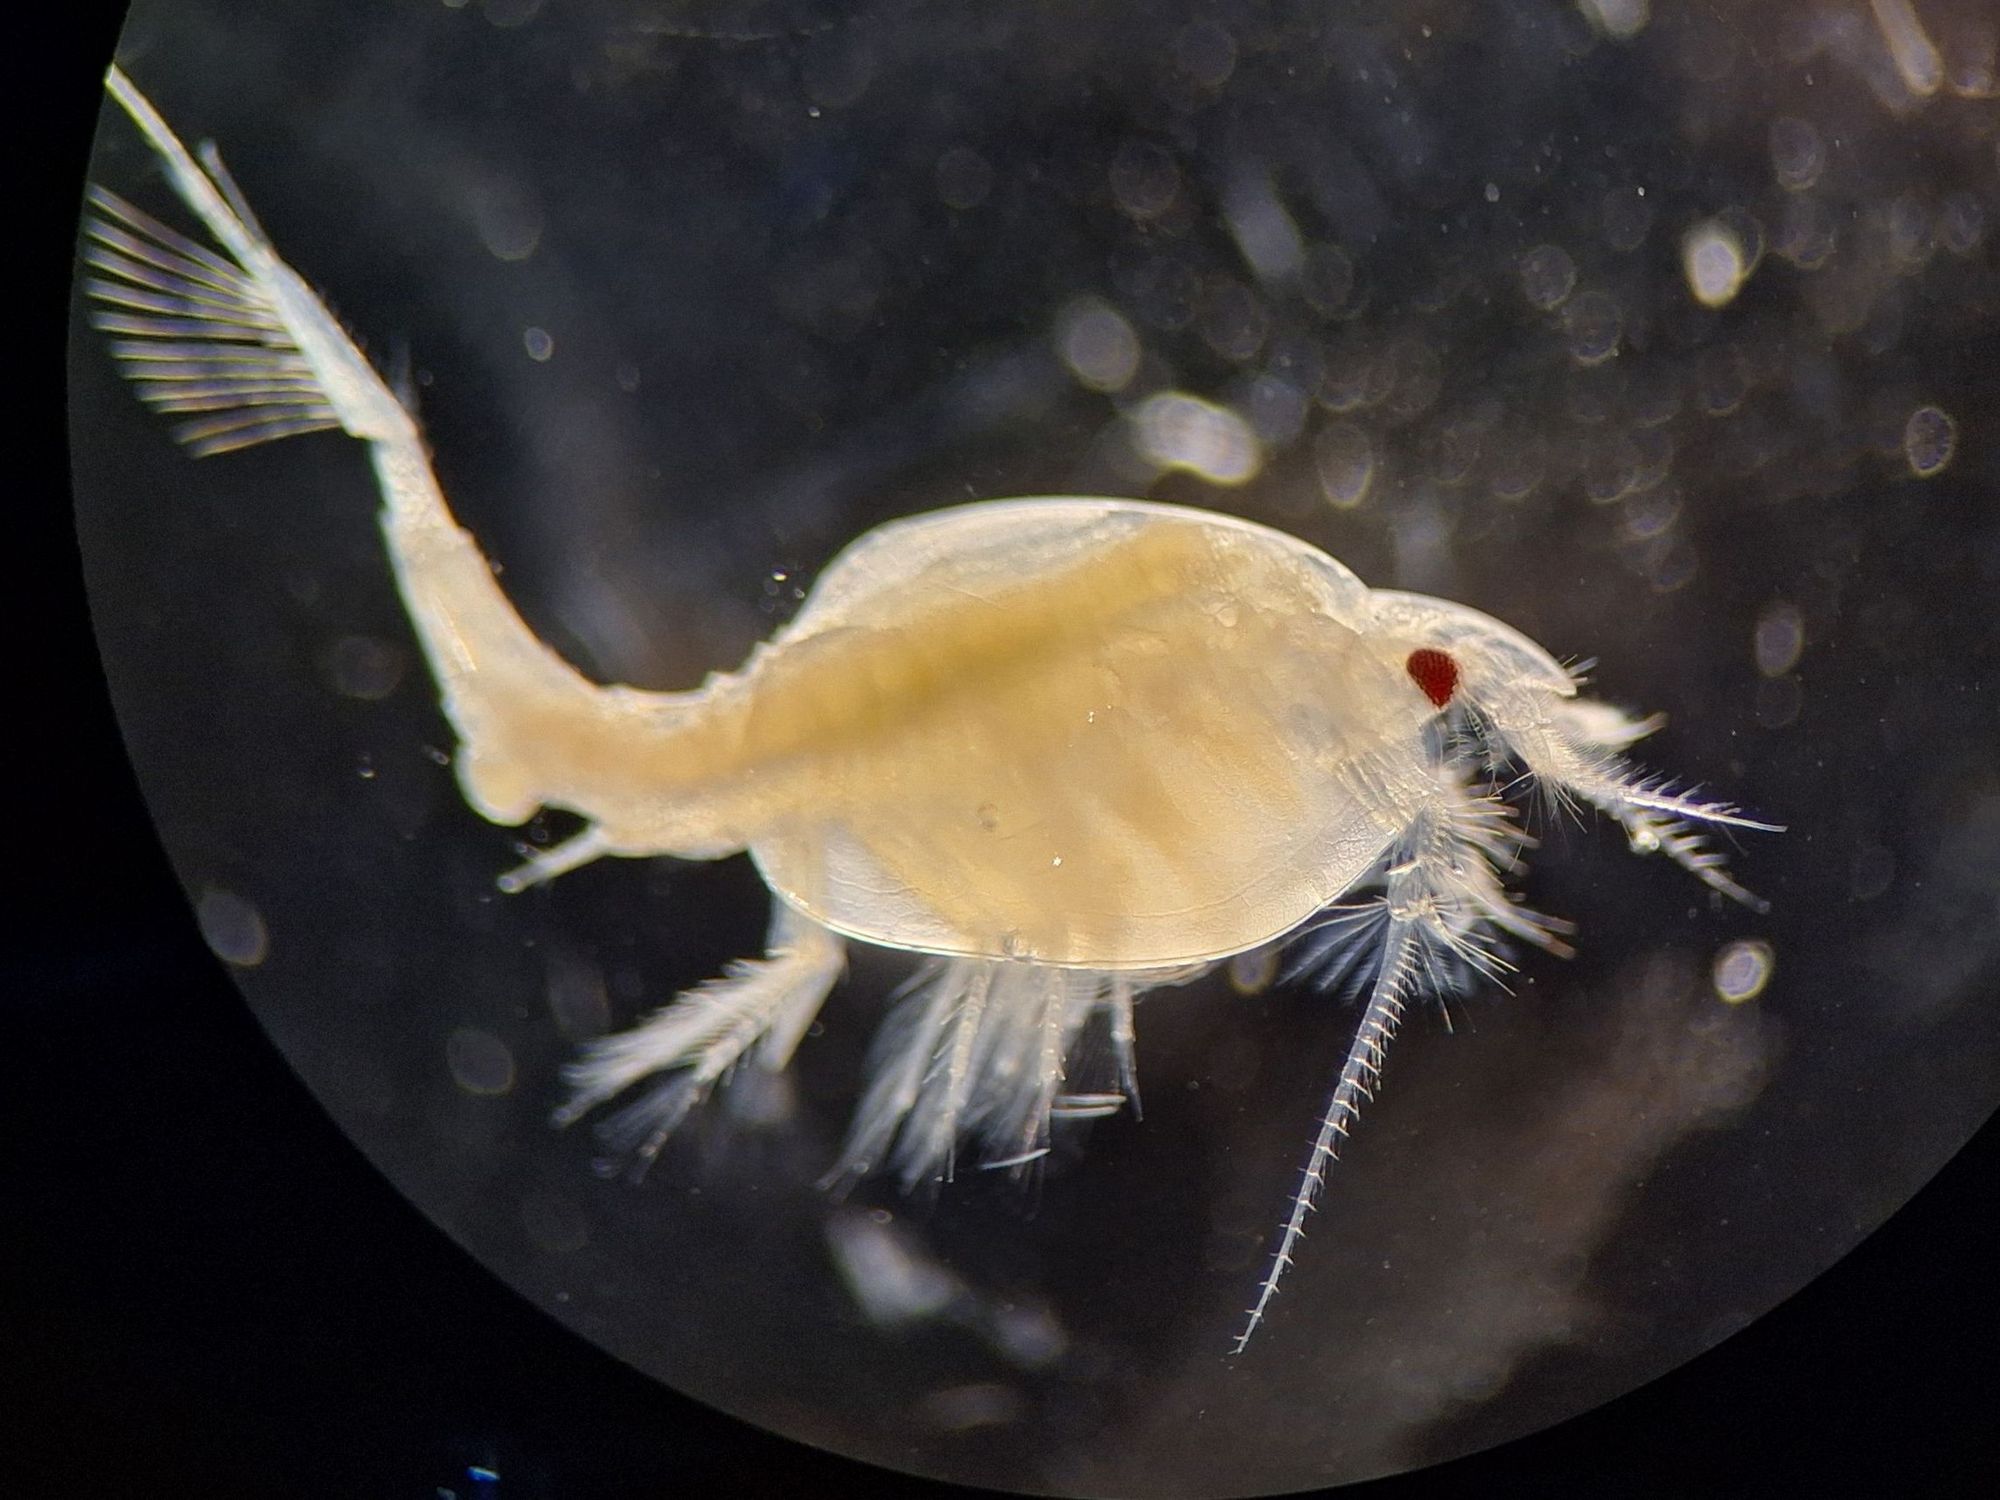 Der Kleinkrebs Nebalia bipes unter dem Mikroskop.